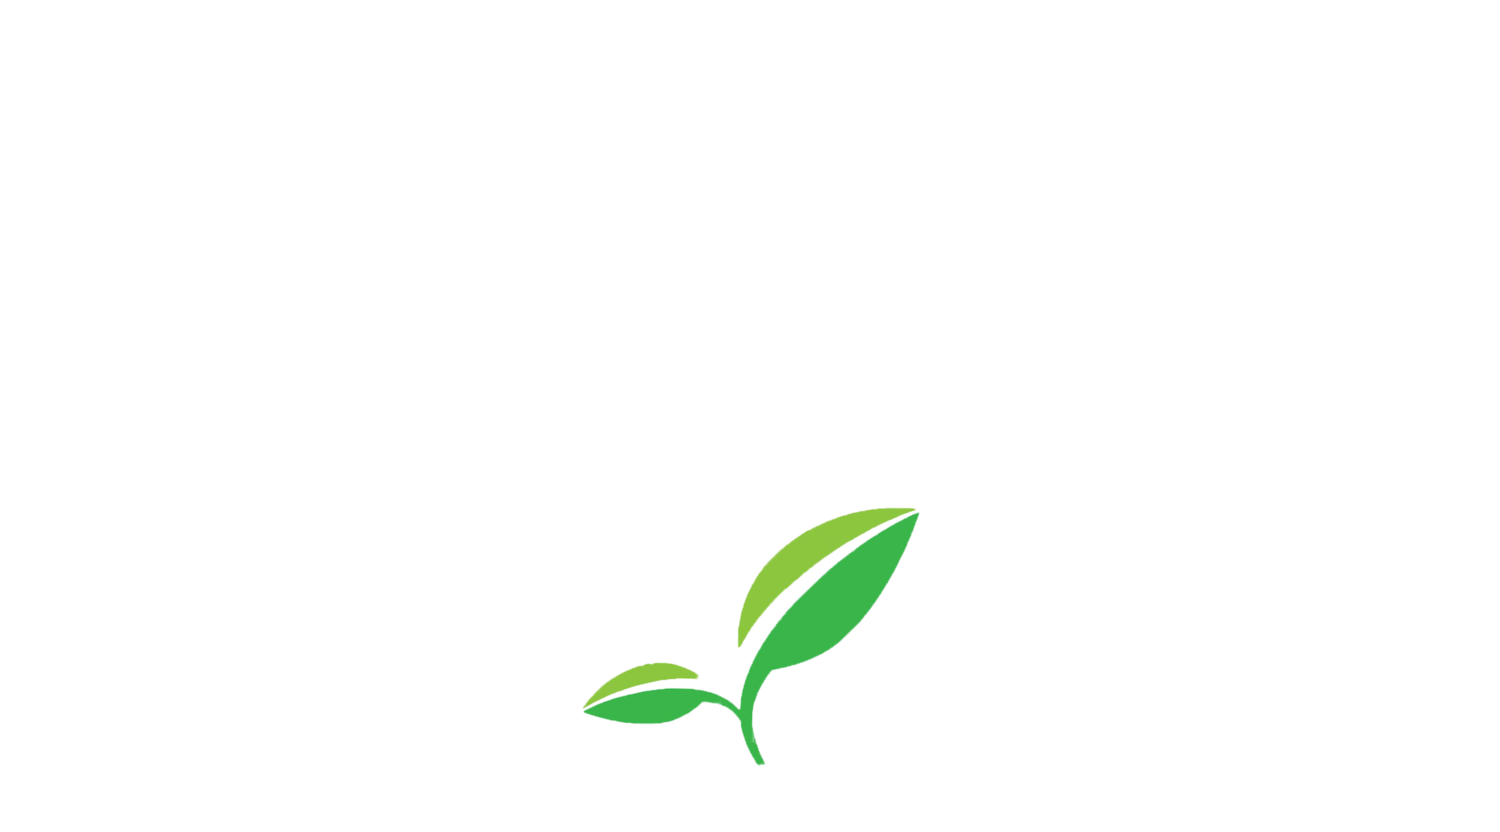 PKS TREES & LOGS | NORFOLK & SUFFOLK FORESTRY & FIREWOOD